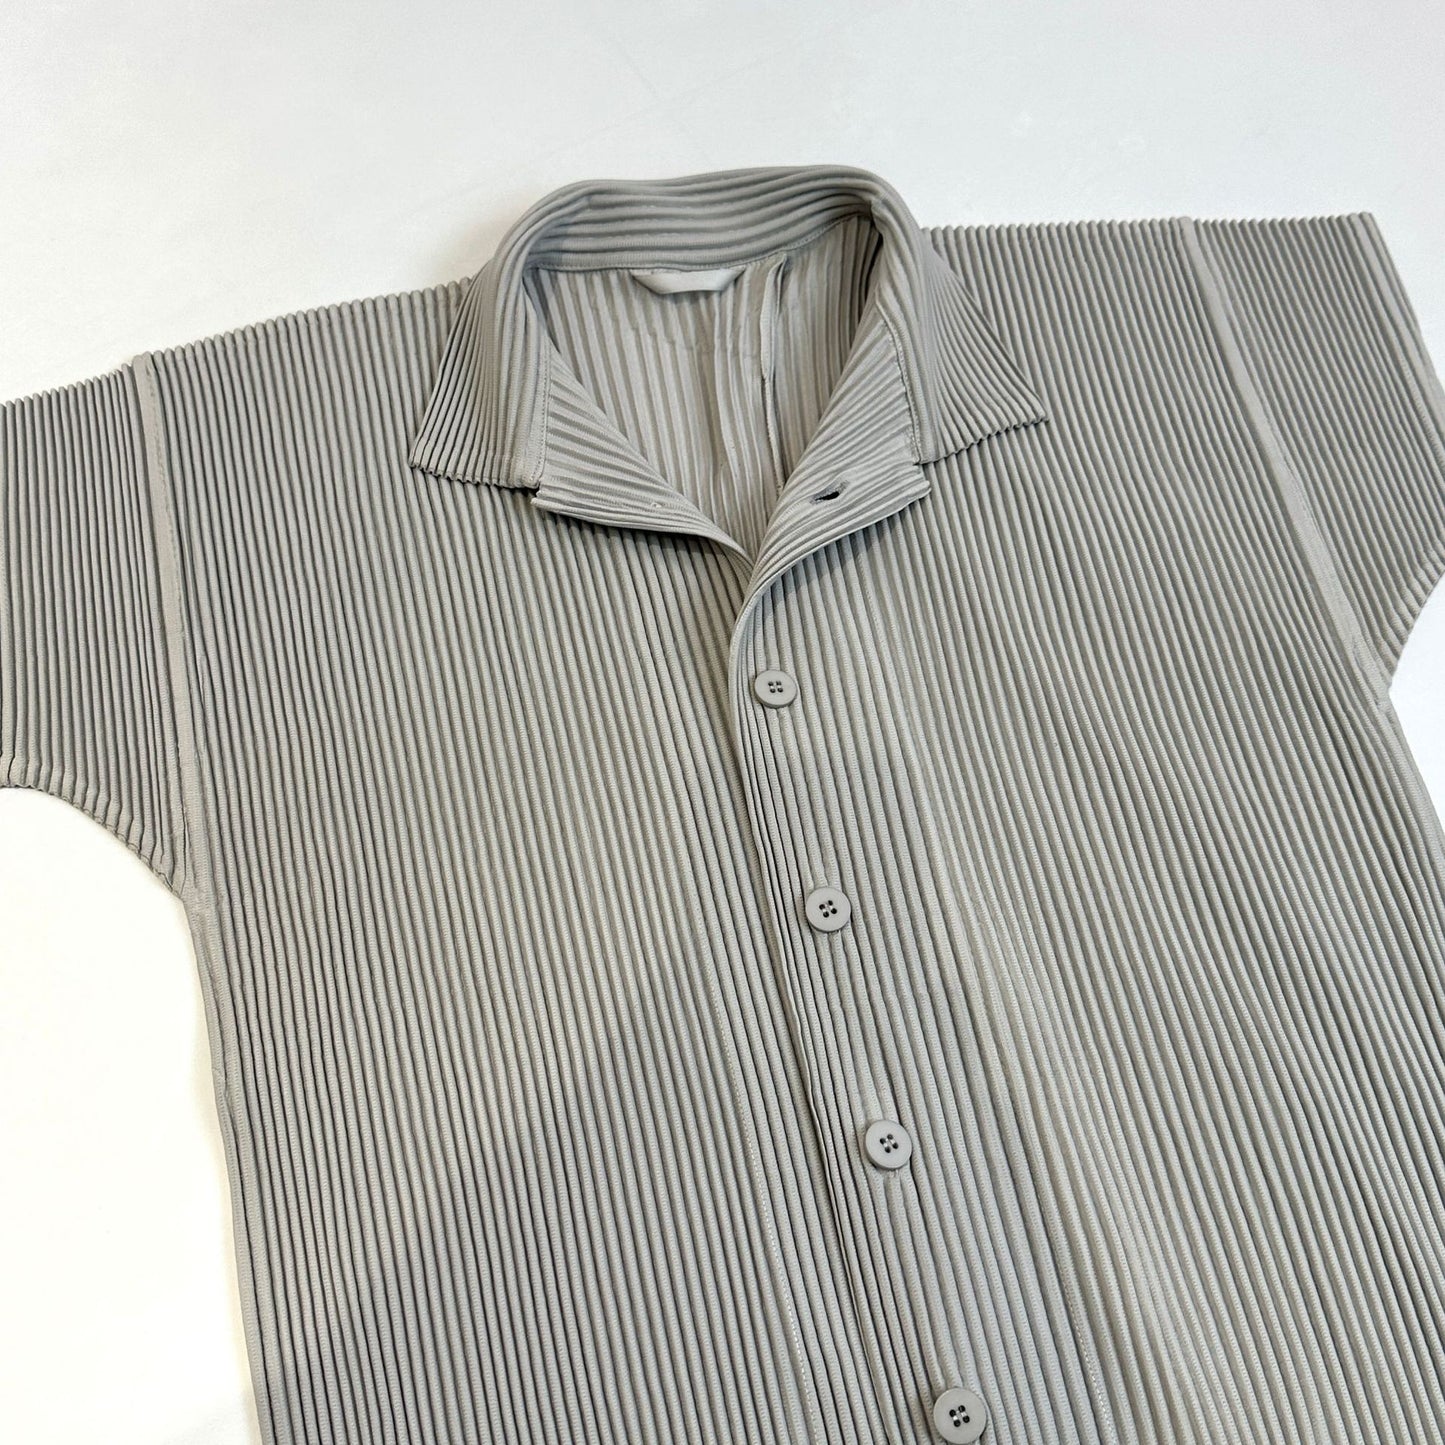 【メンズ】夏のセットアップ: オープンカラー半袖シャツ×テーパードパンツ プリーツ加工セットアップ | 20代30代40代におすすめ